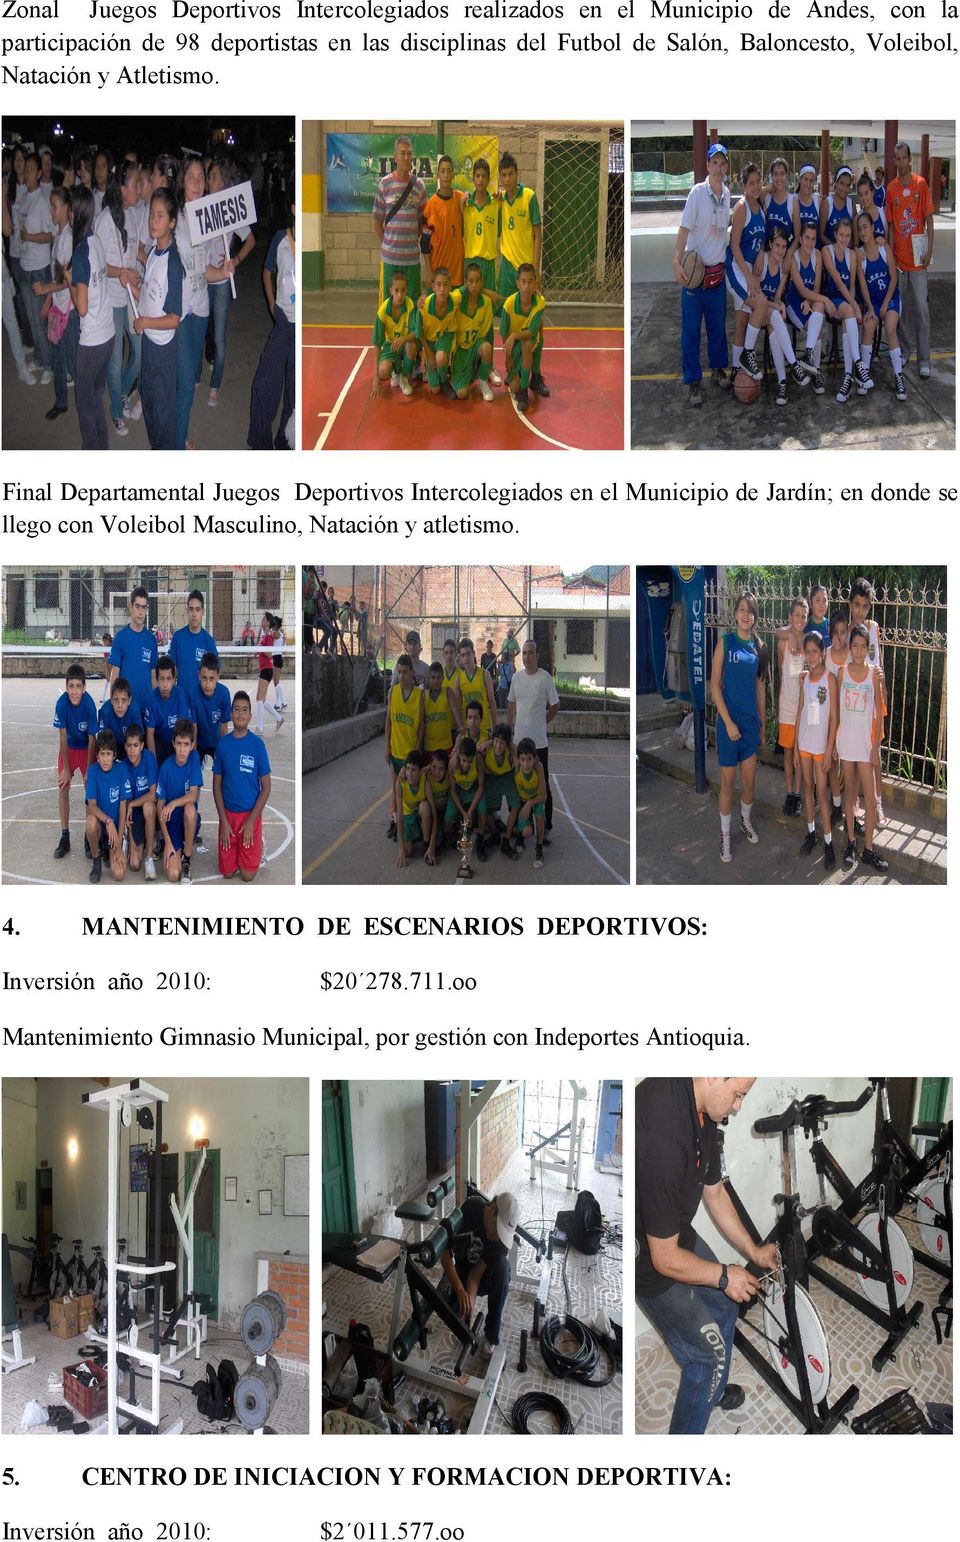 Final Departamental Juegos Deportivos Intercolegiados en el Municipio de Jardín; en donde se llego con Voleibol Masculino, Natación y atletismo.